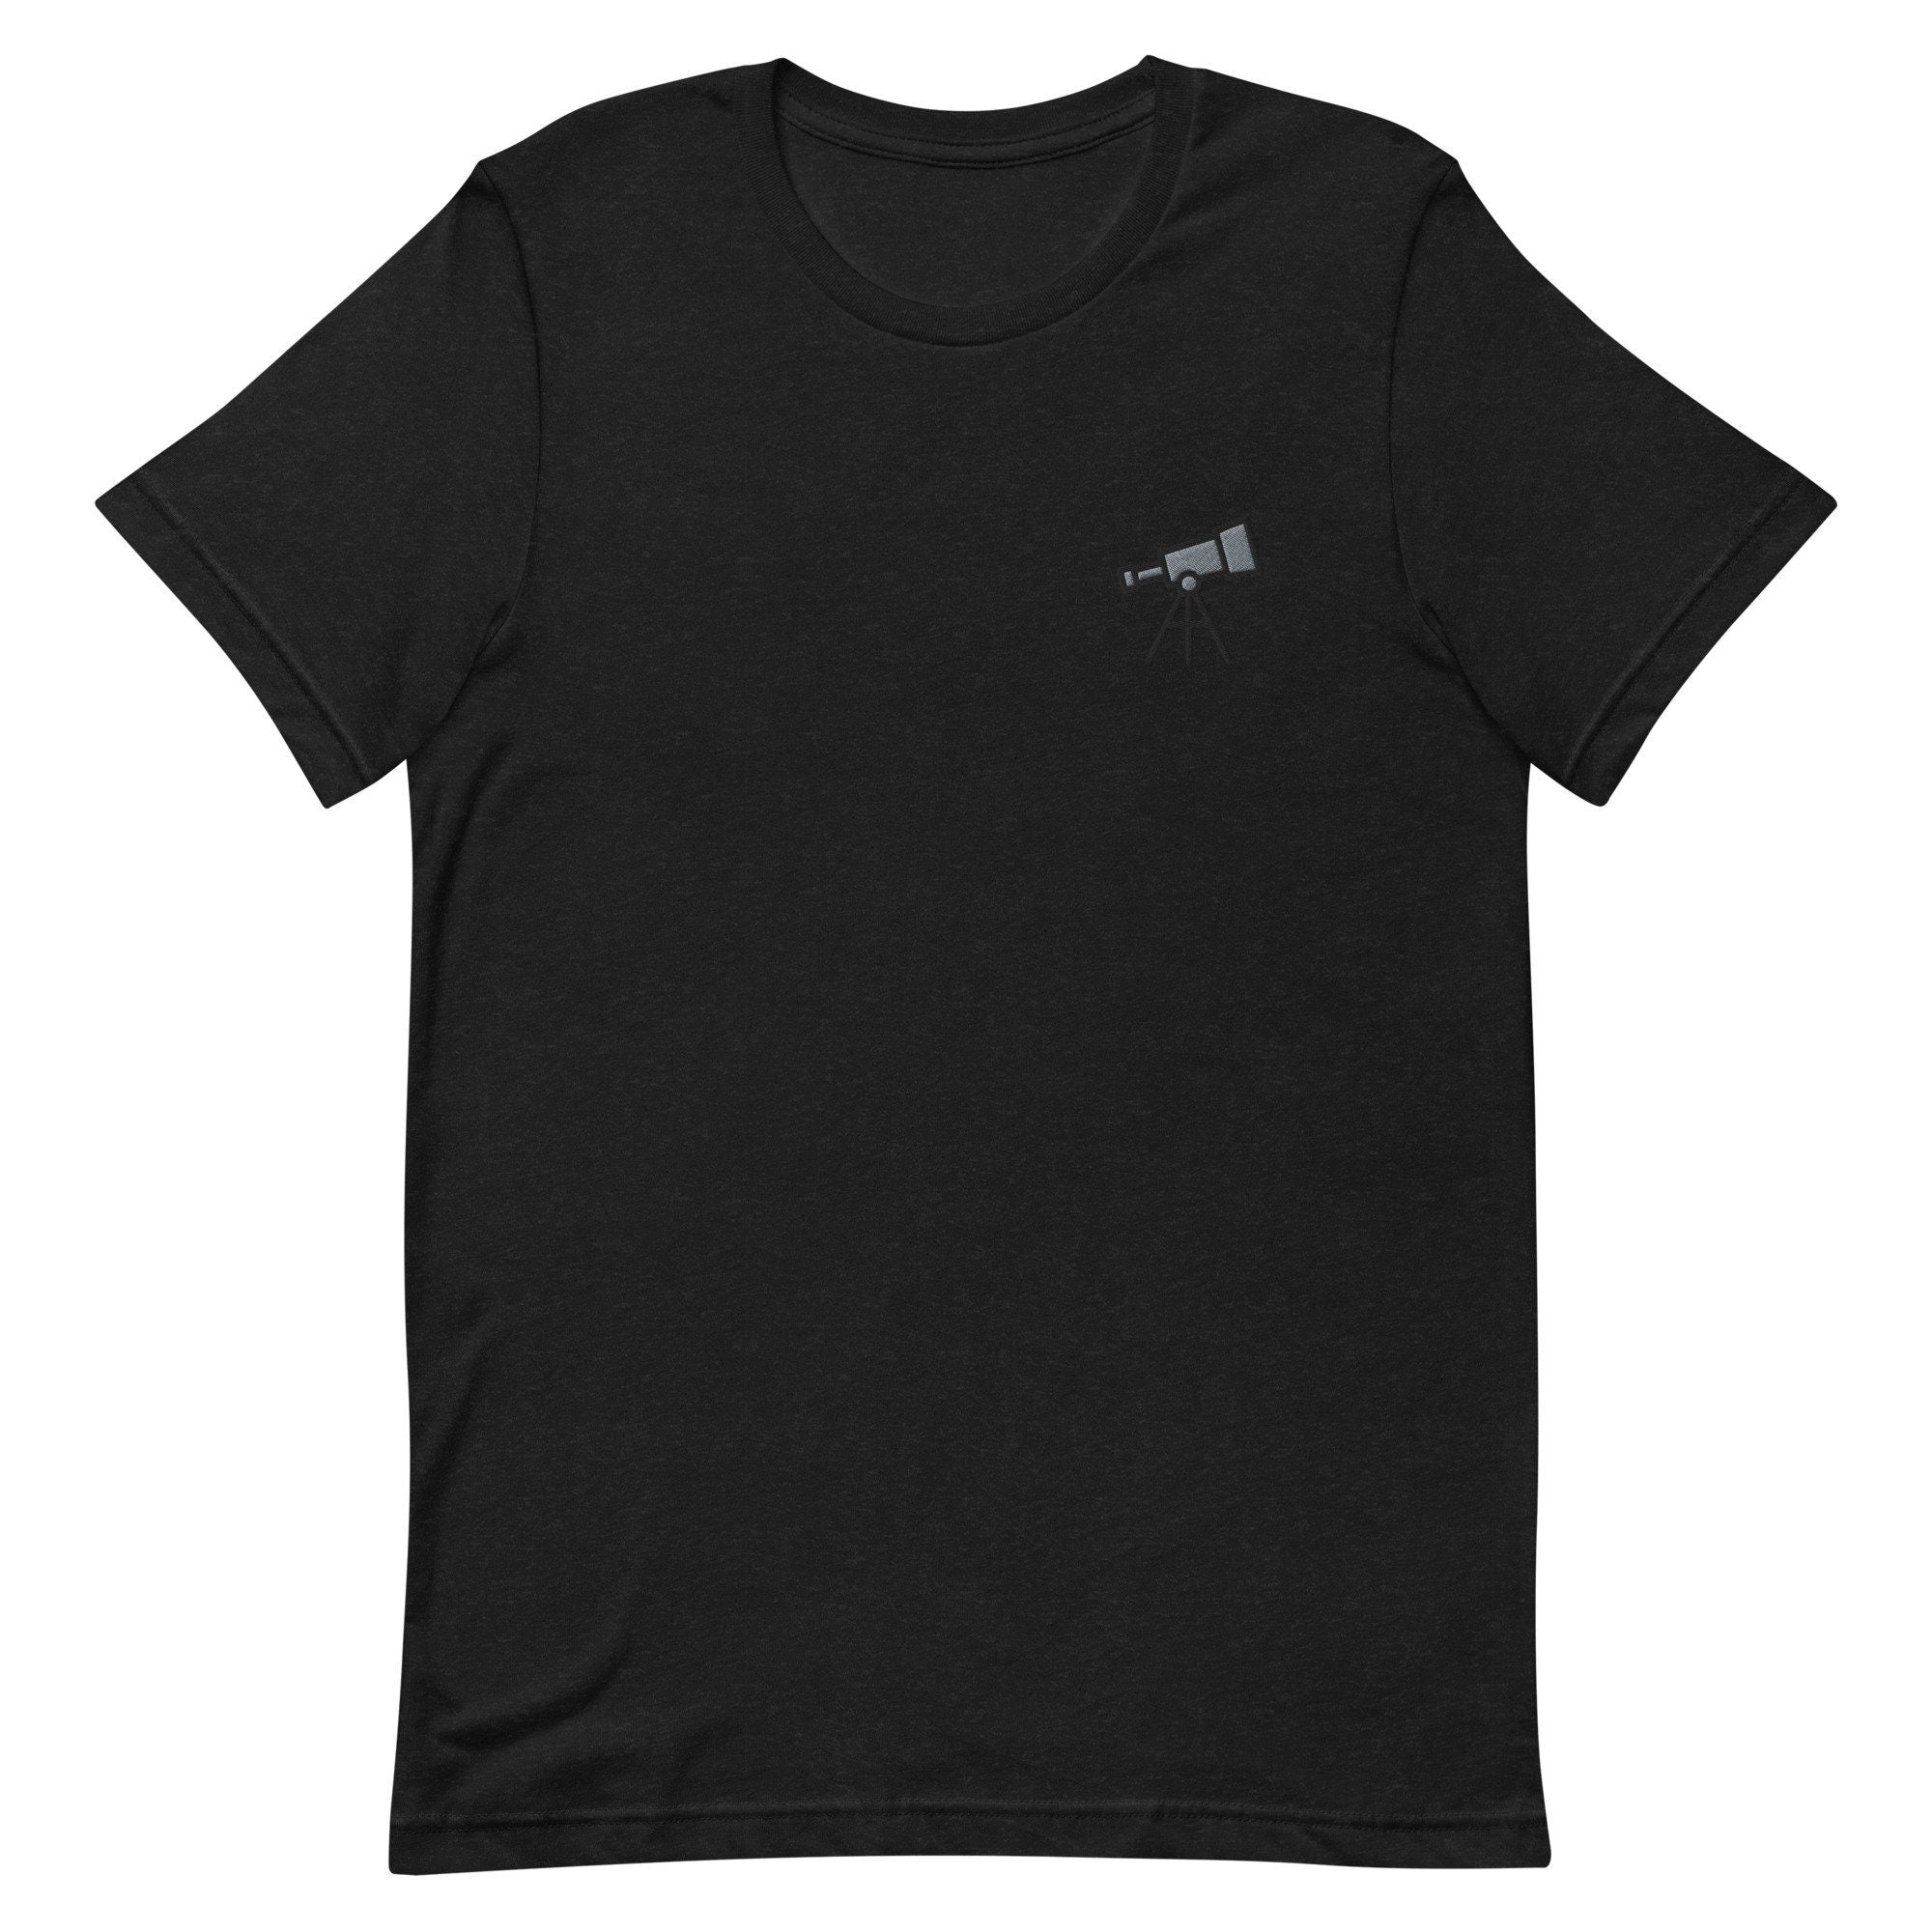 Telescope Premium Men's T-Shirt, Space Embroidered Men's T-Shirt Gift for Boyfriend, Men's Short Sleeve Shirt - Multiple Colors